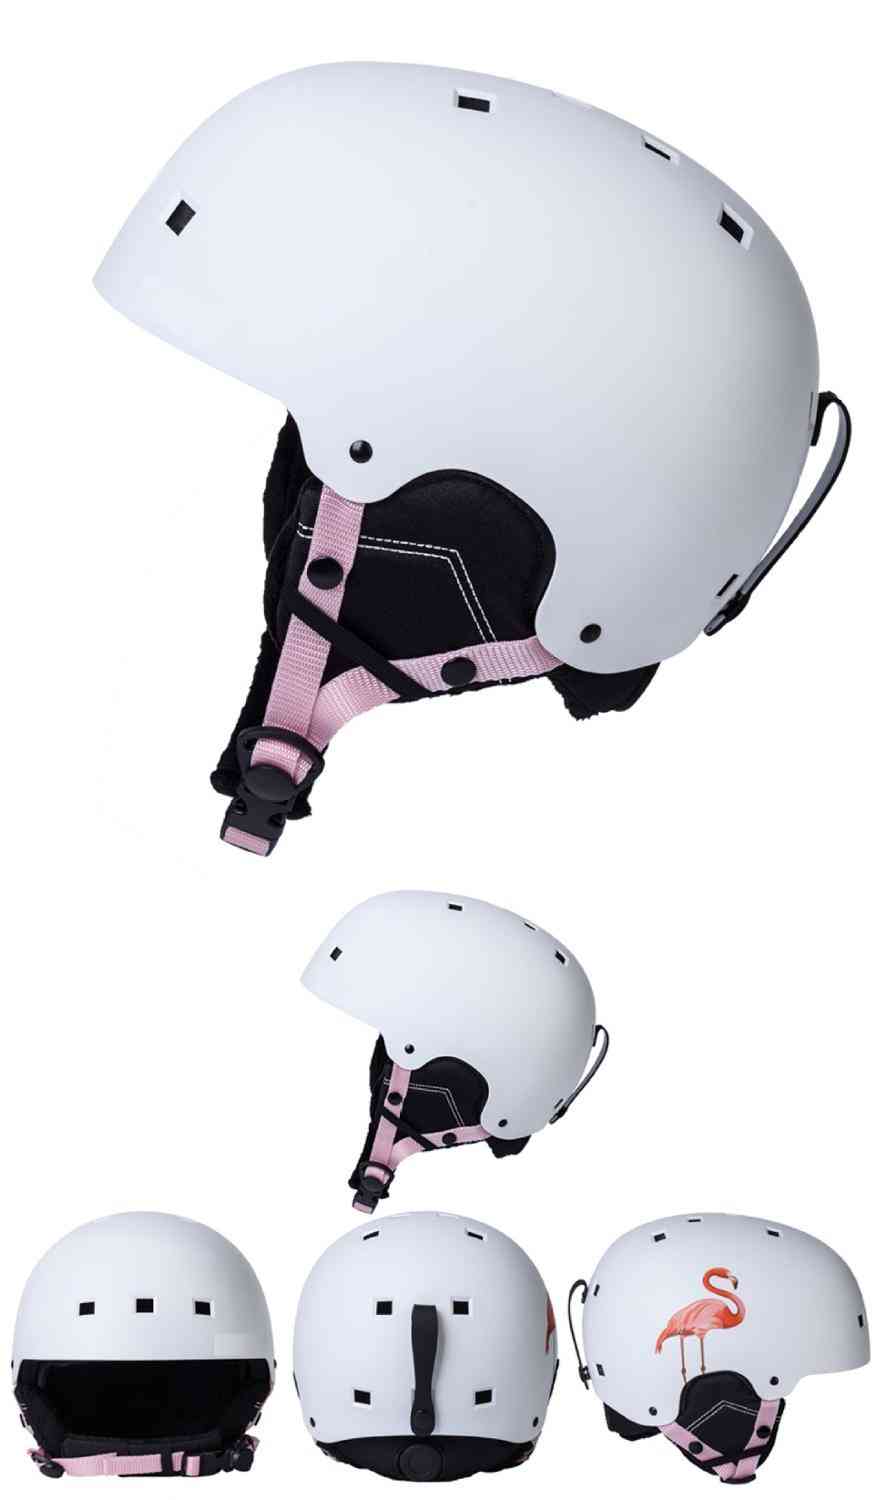 Nuovo casco da sci per adulto